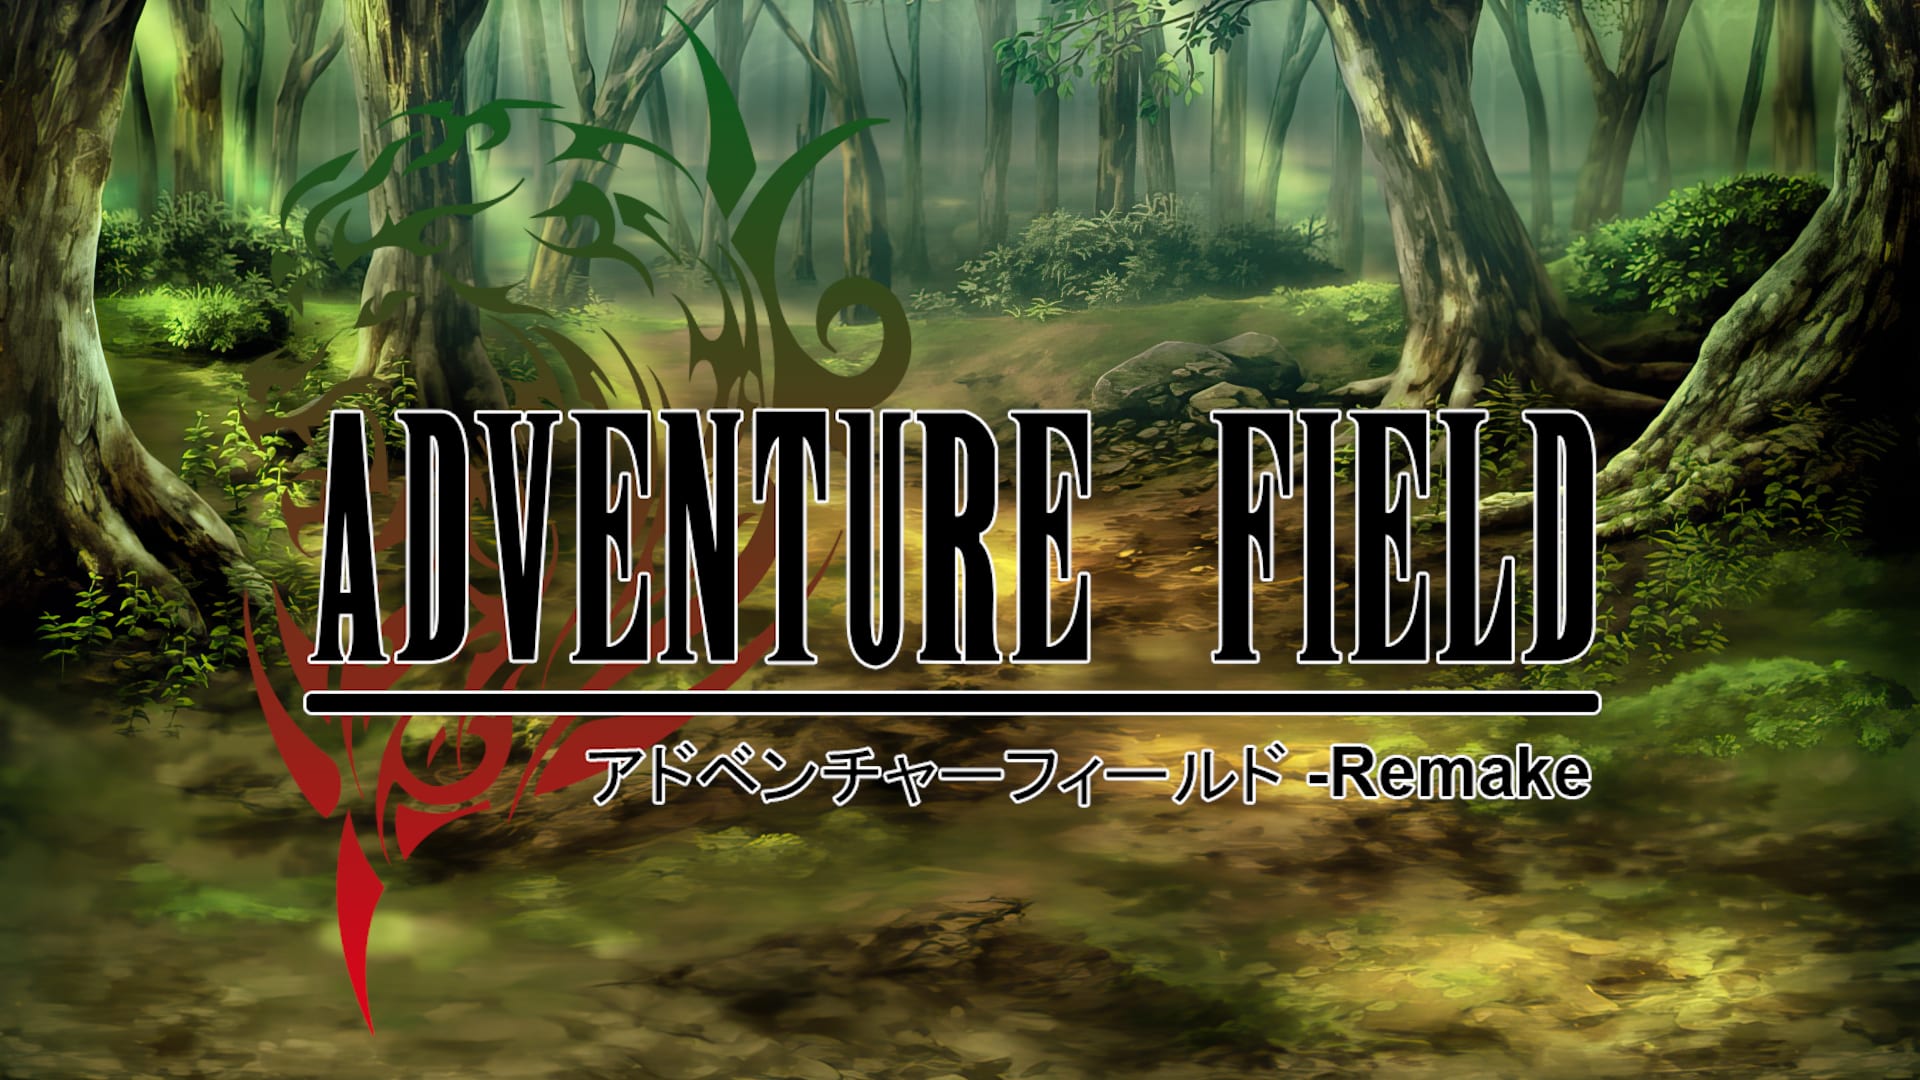 Adventure Field™ Remake 1